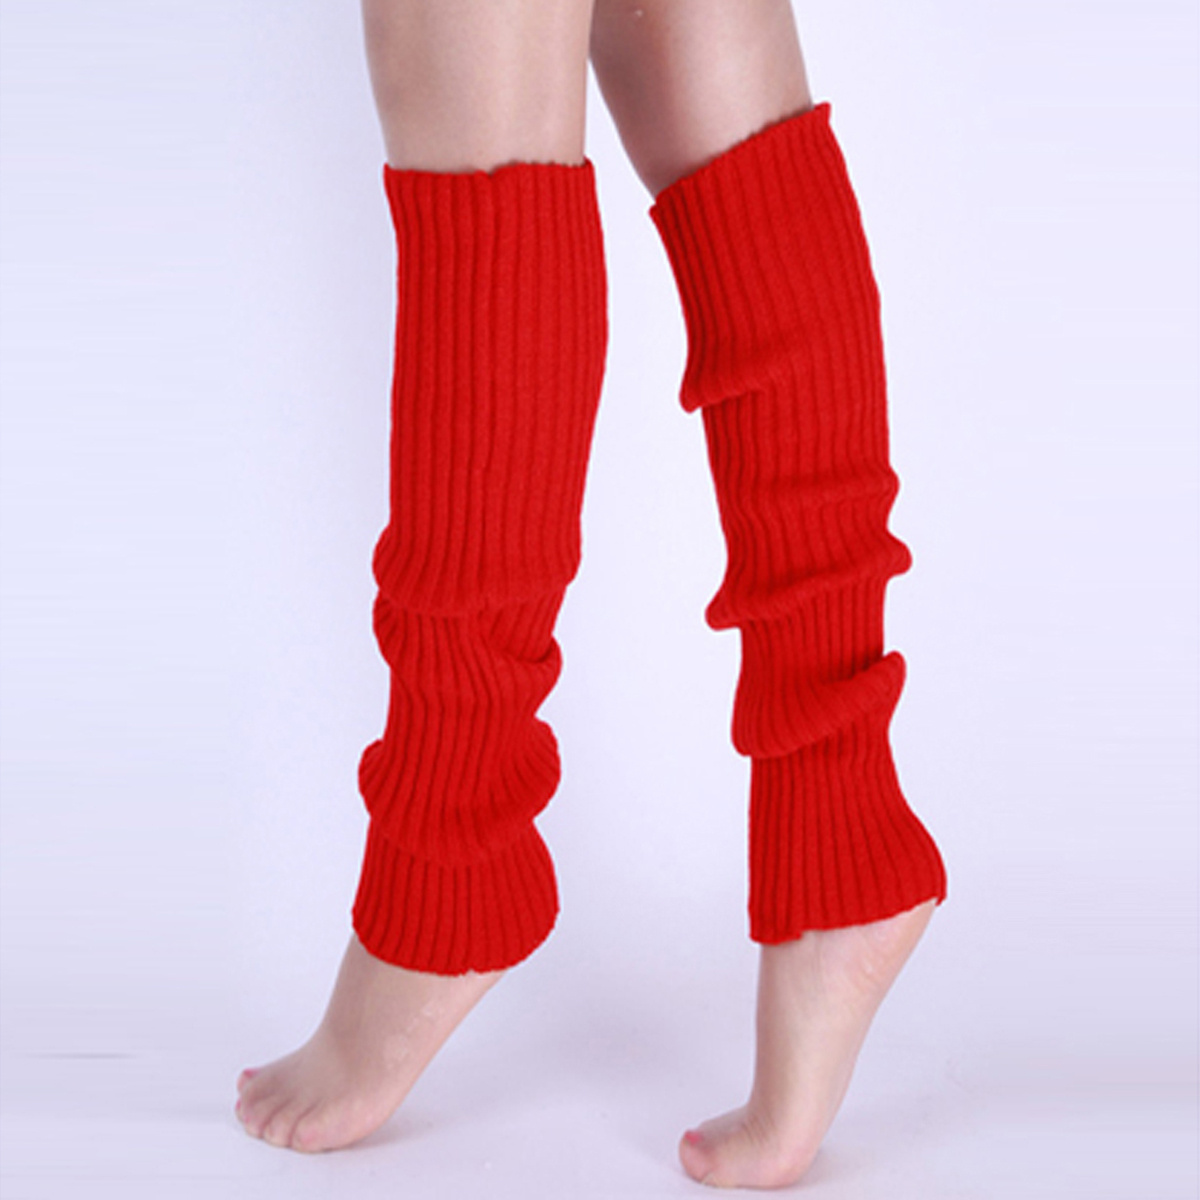 Buy Leg Warmer Socks online